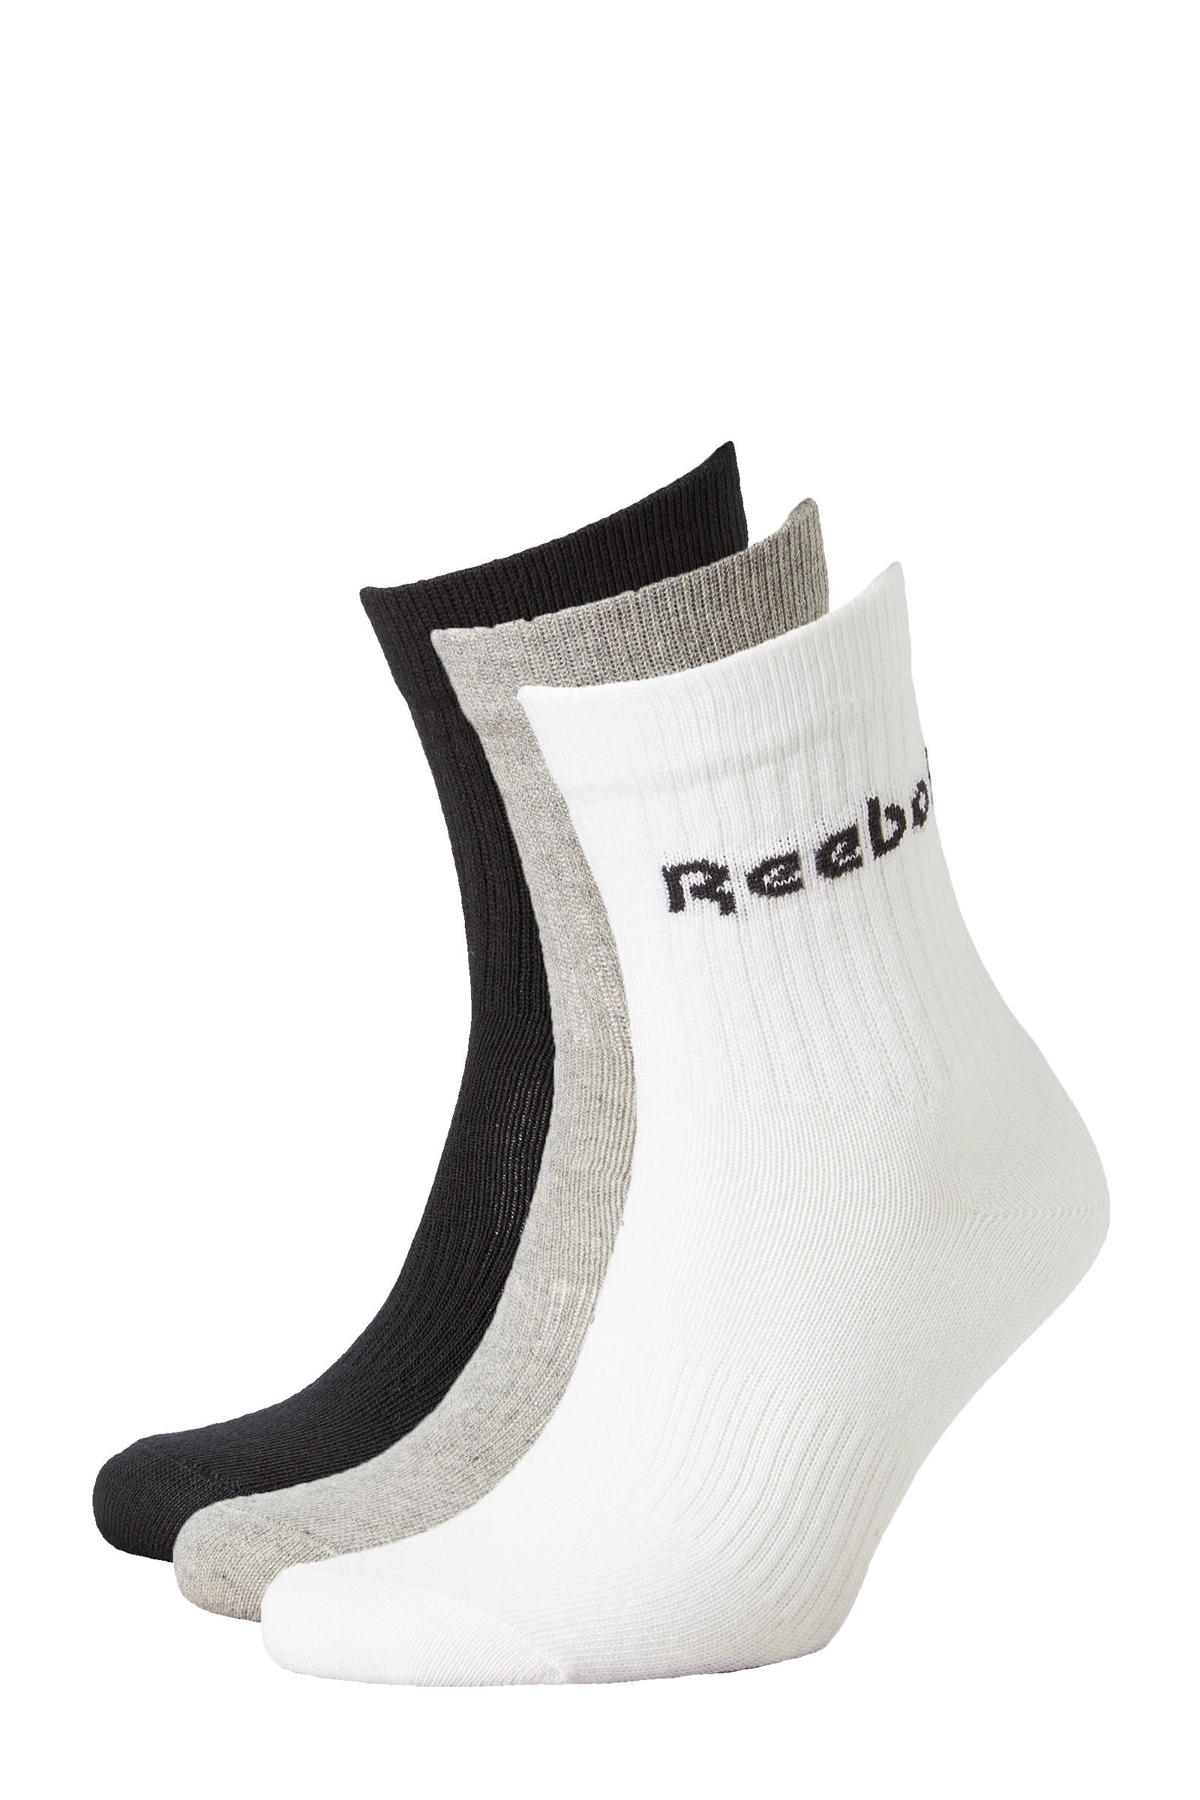 Kleverig Variant Vrouw Reebok Training sokken - set van 3 grijs/zwart/wit | wehkamp